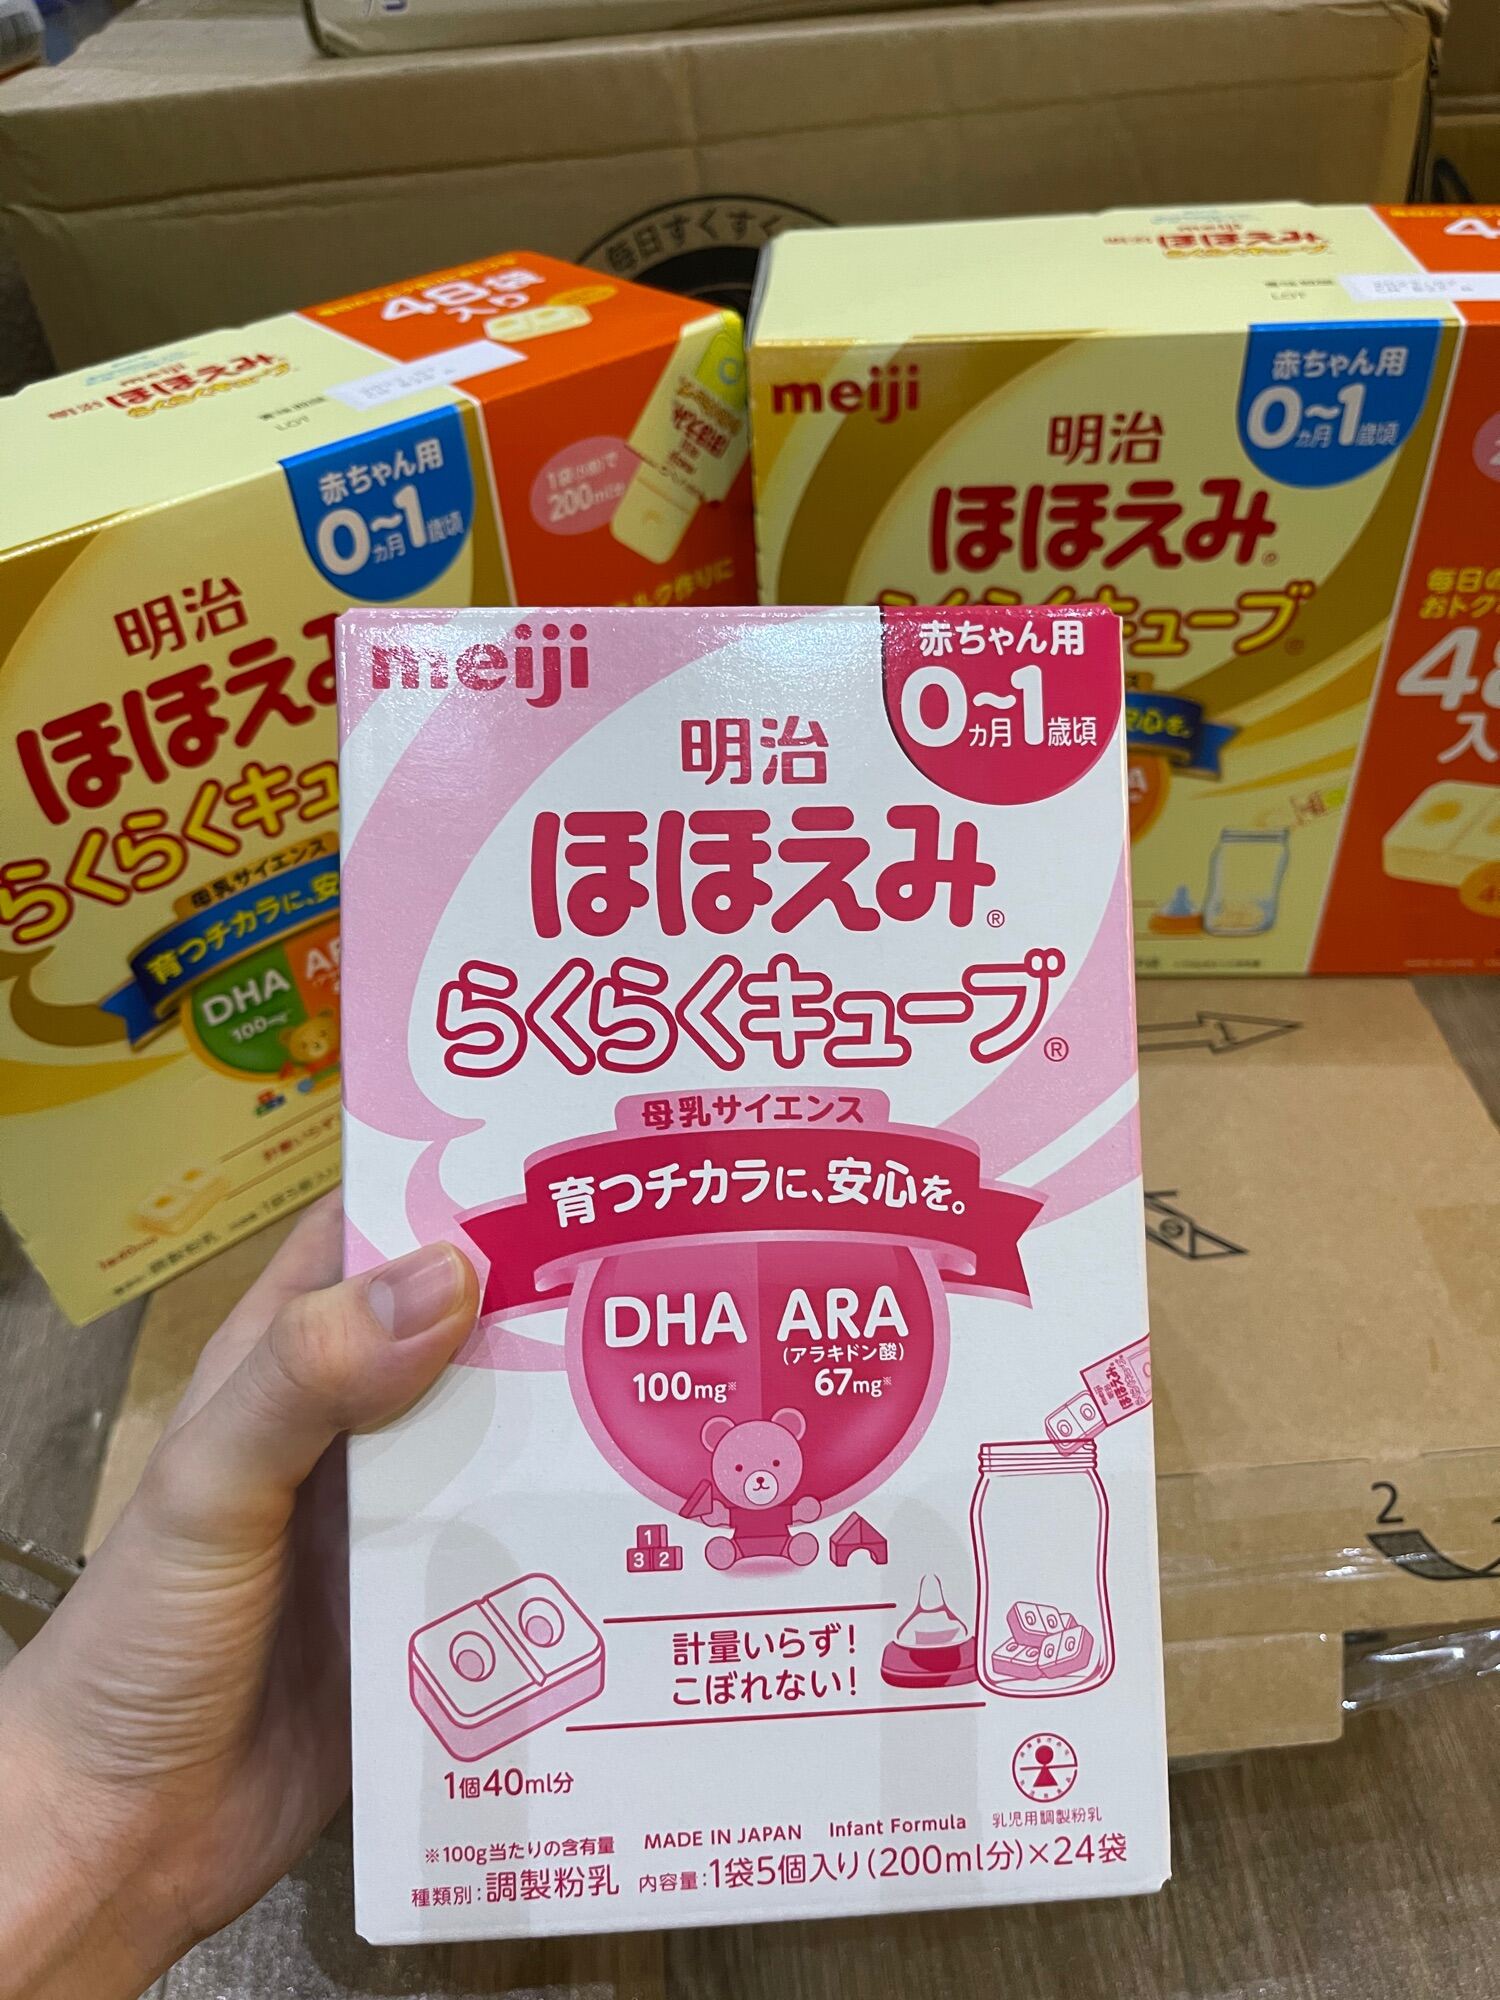 sữa meiji nhật nội địa dạng thanh cho bé từ 0-1 tuổi 1